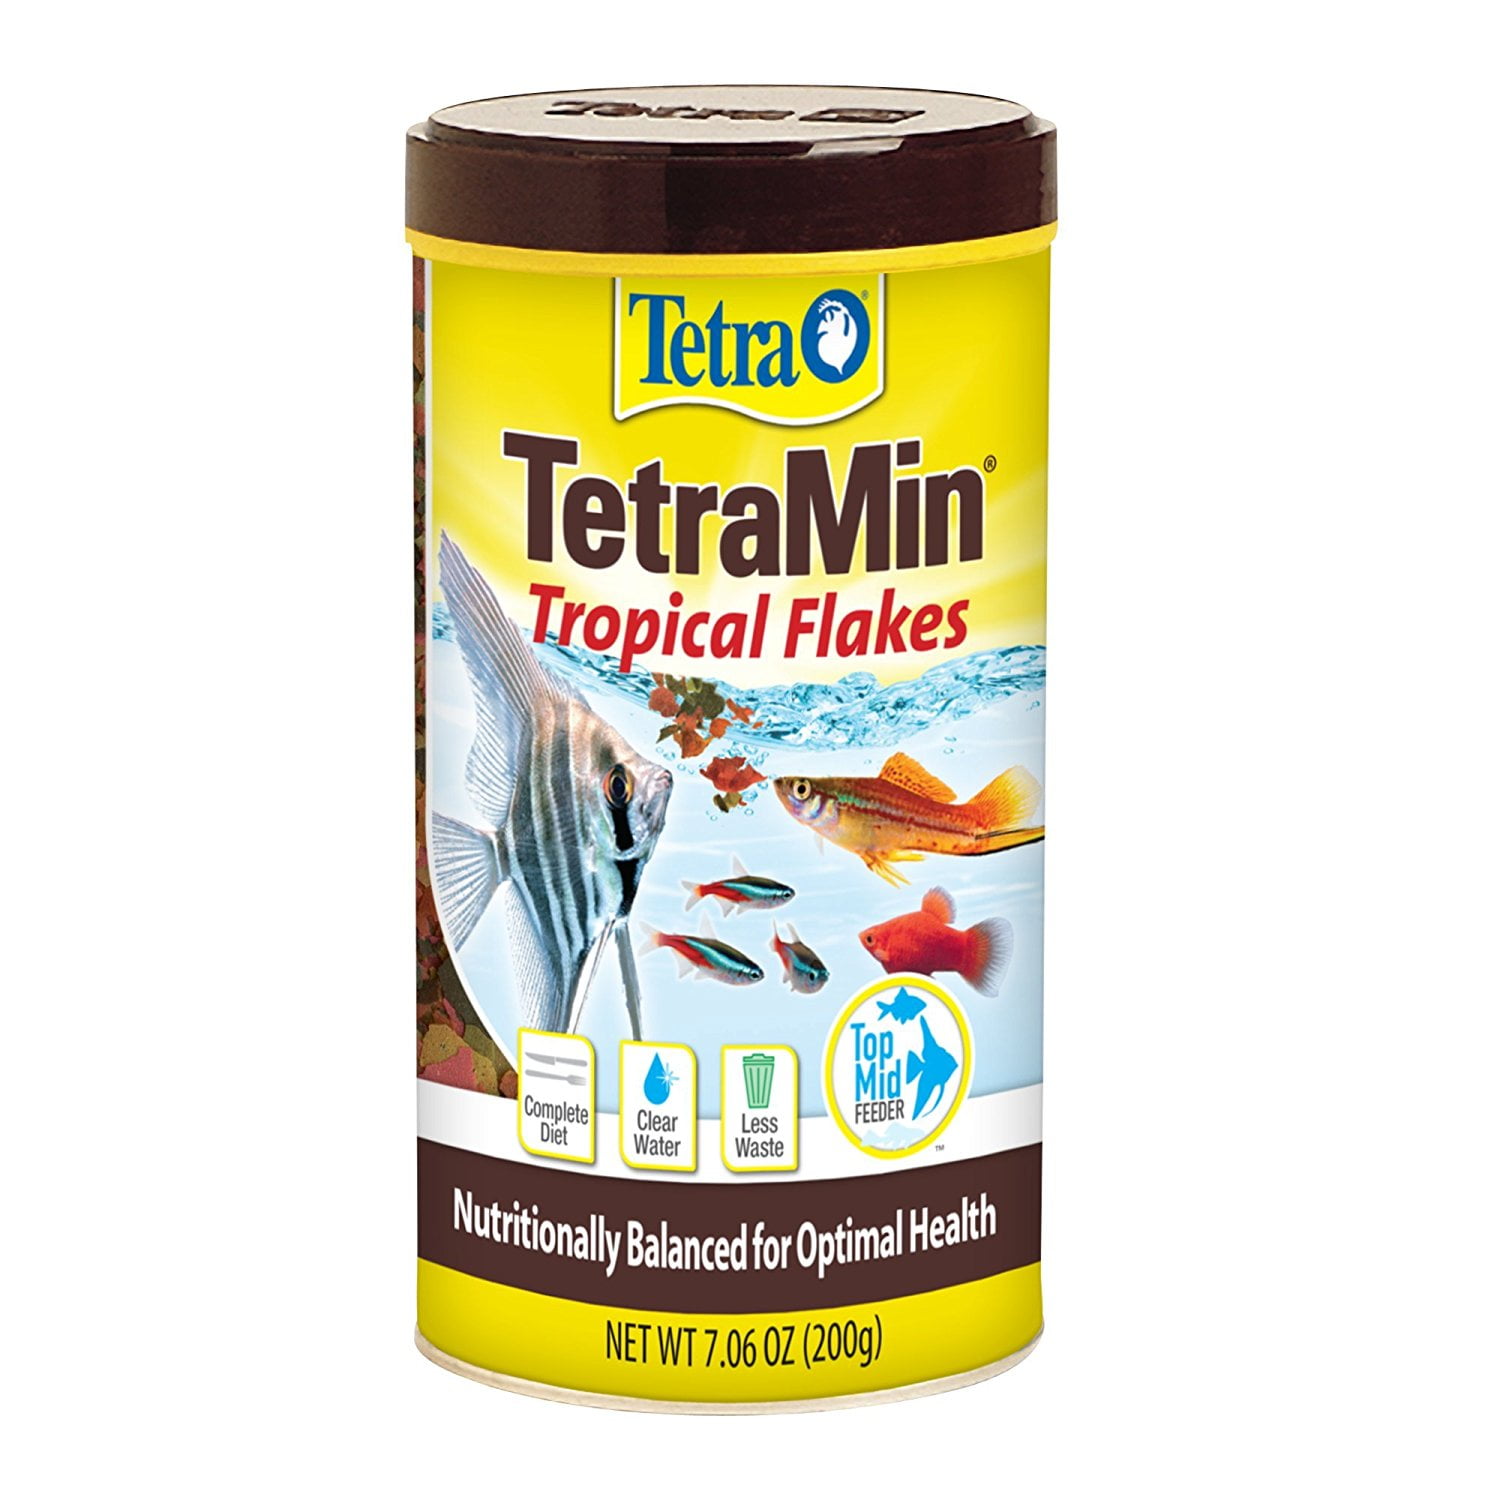 Tetra TetraMin Select Tropical Flakes, 7.06 oz.